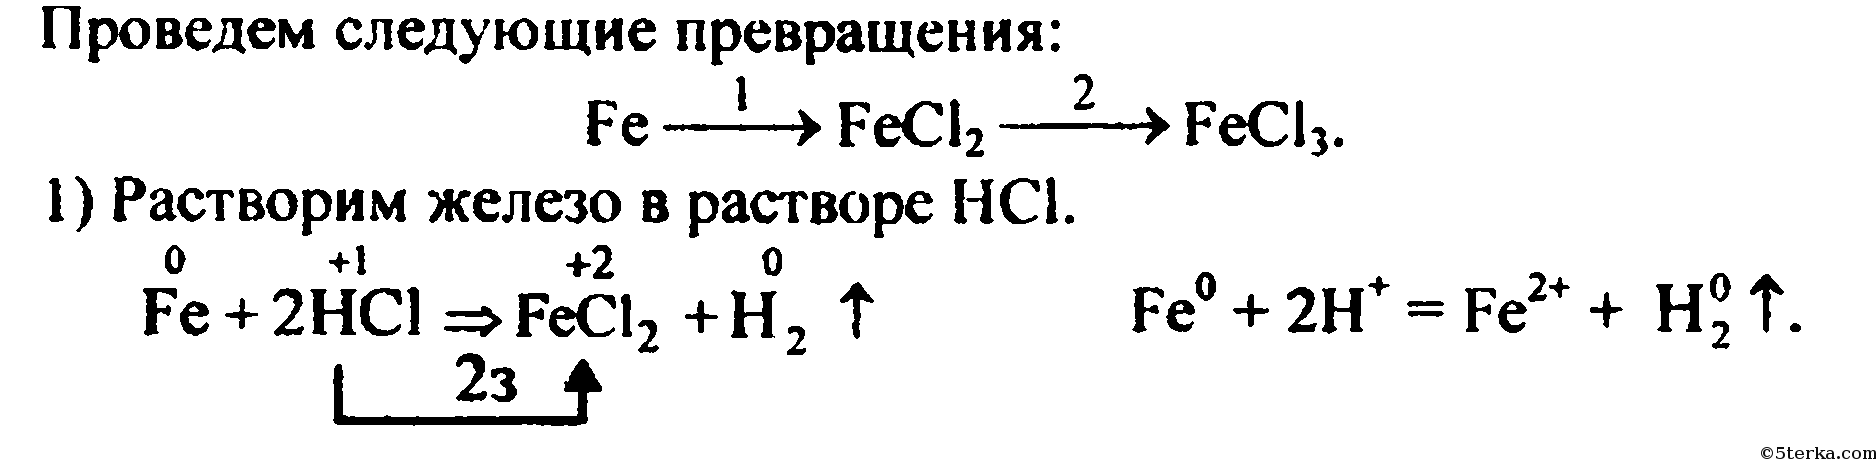 Получение сульфата железа 2. Способы получения хлорида железа 2. Ионное уравнение получения железа.